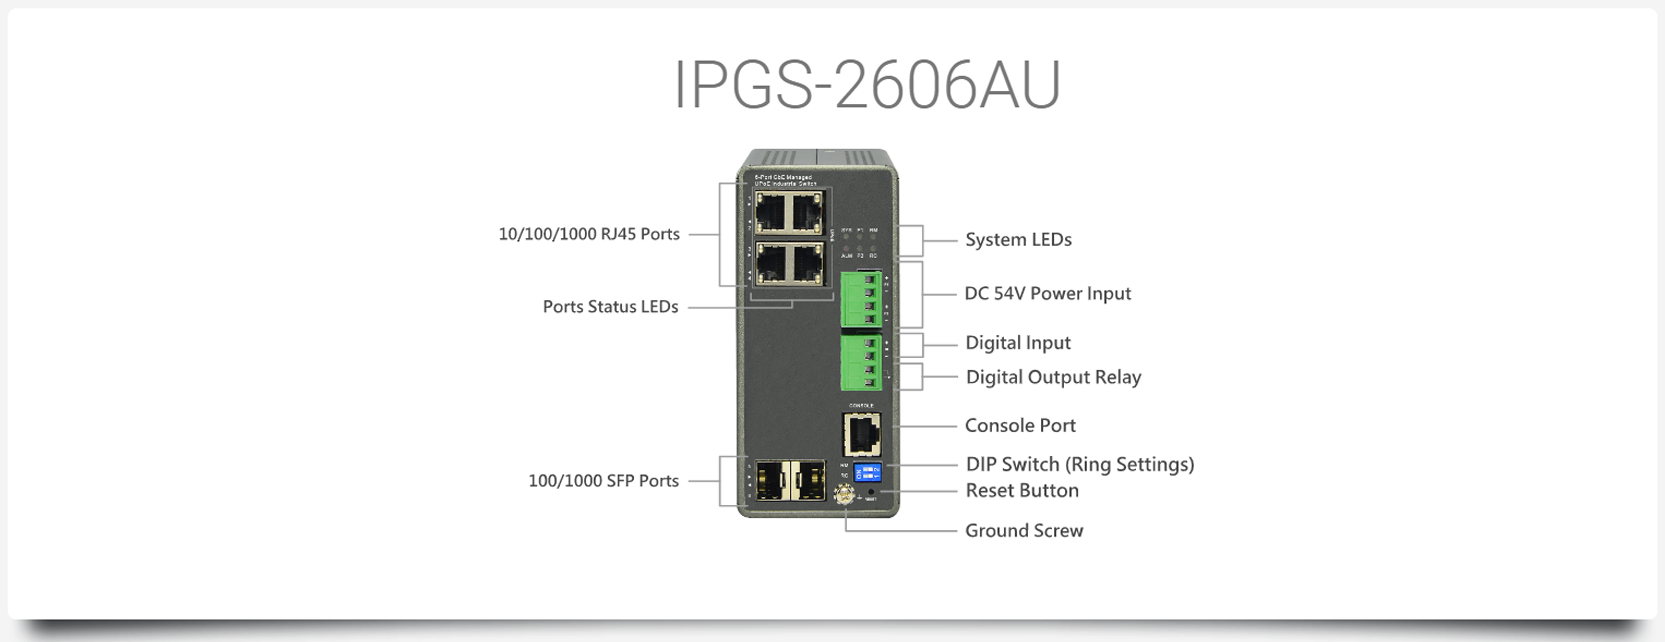 IPGS-2606AU